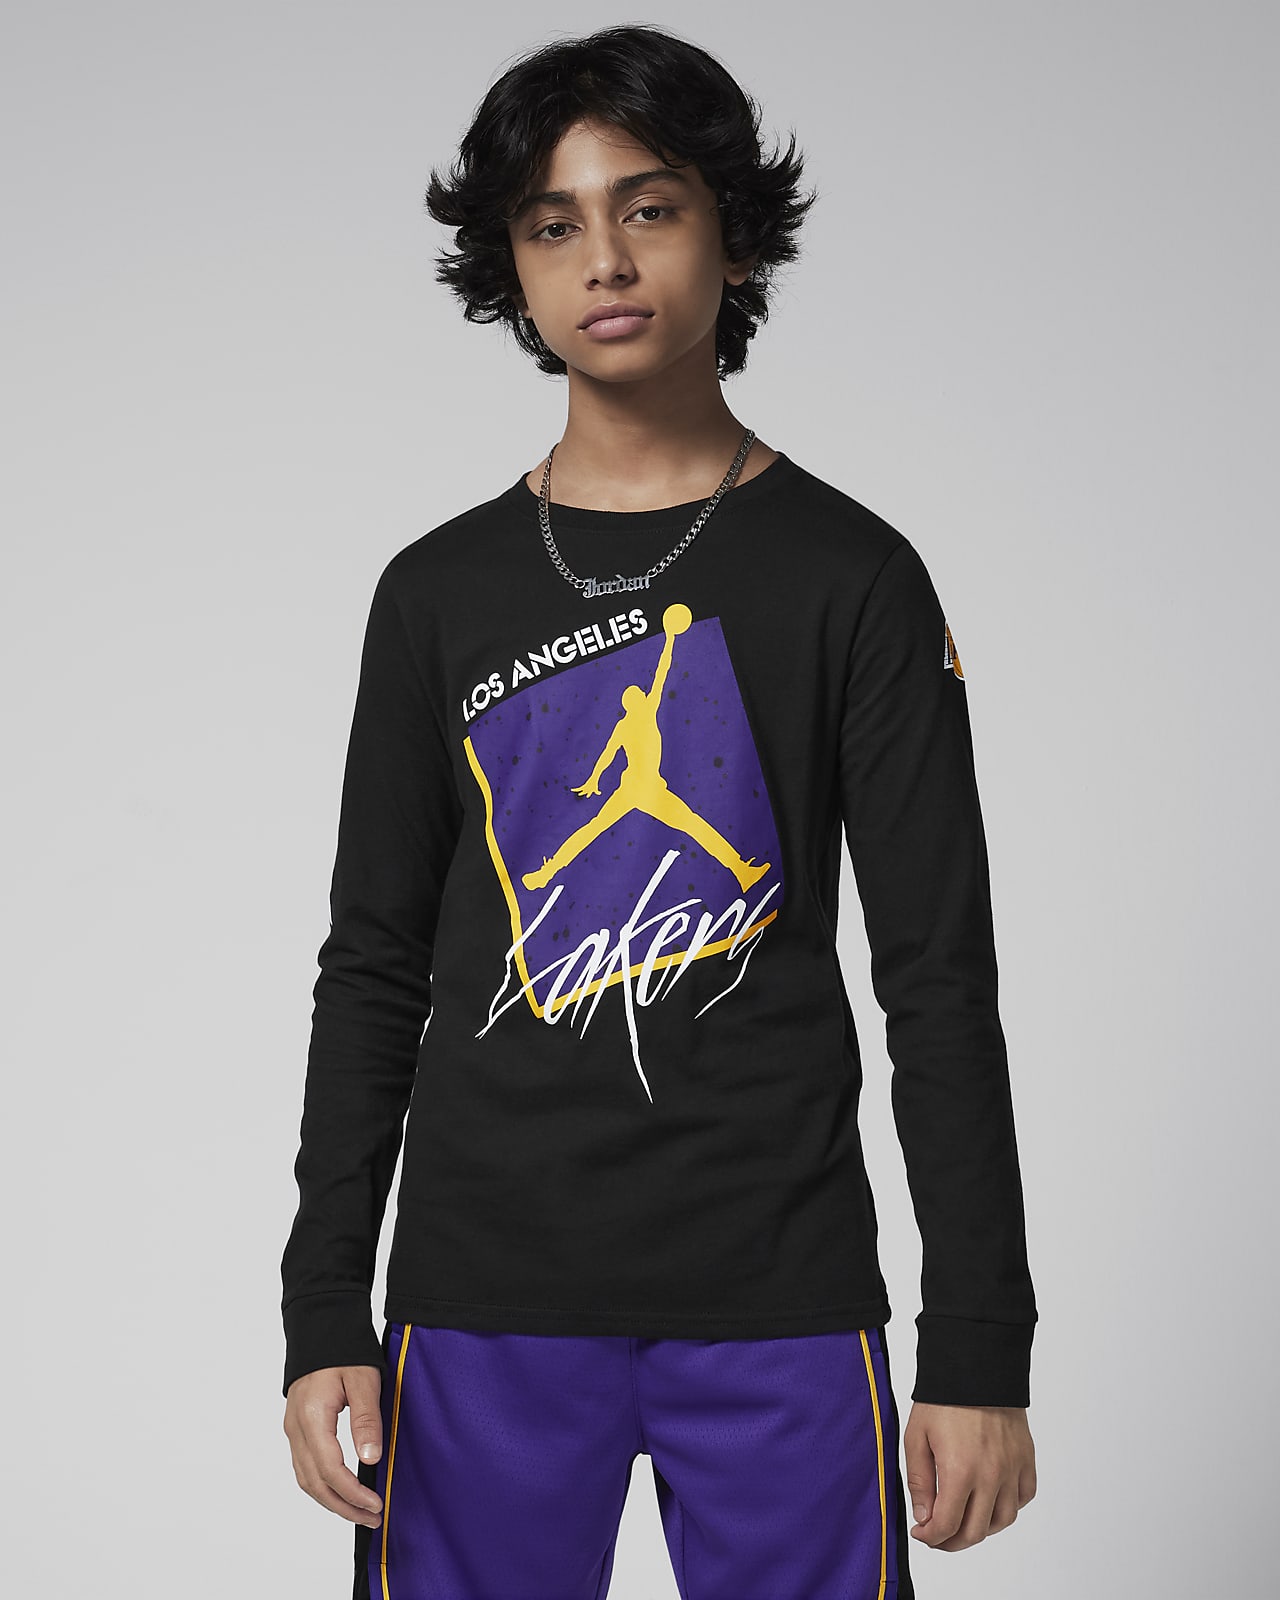 Μακρυμάνικο T-Shirt Jordan Max90 NBA Λος Άντζελες Λέικερς Courtside Statement Edition για μεγάλα αγόρια